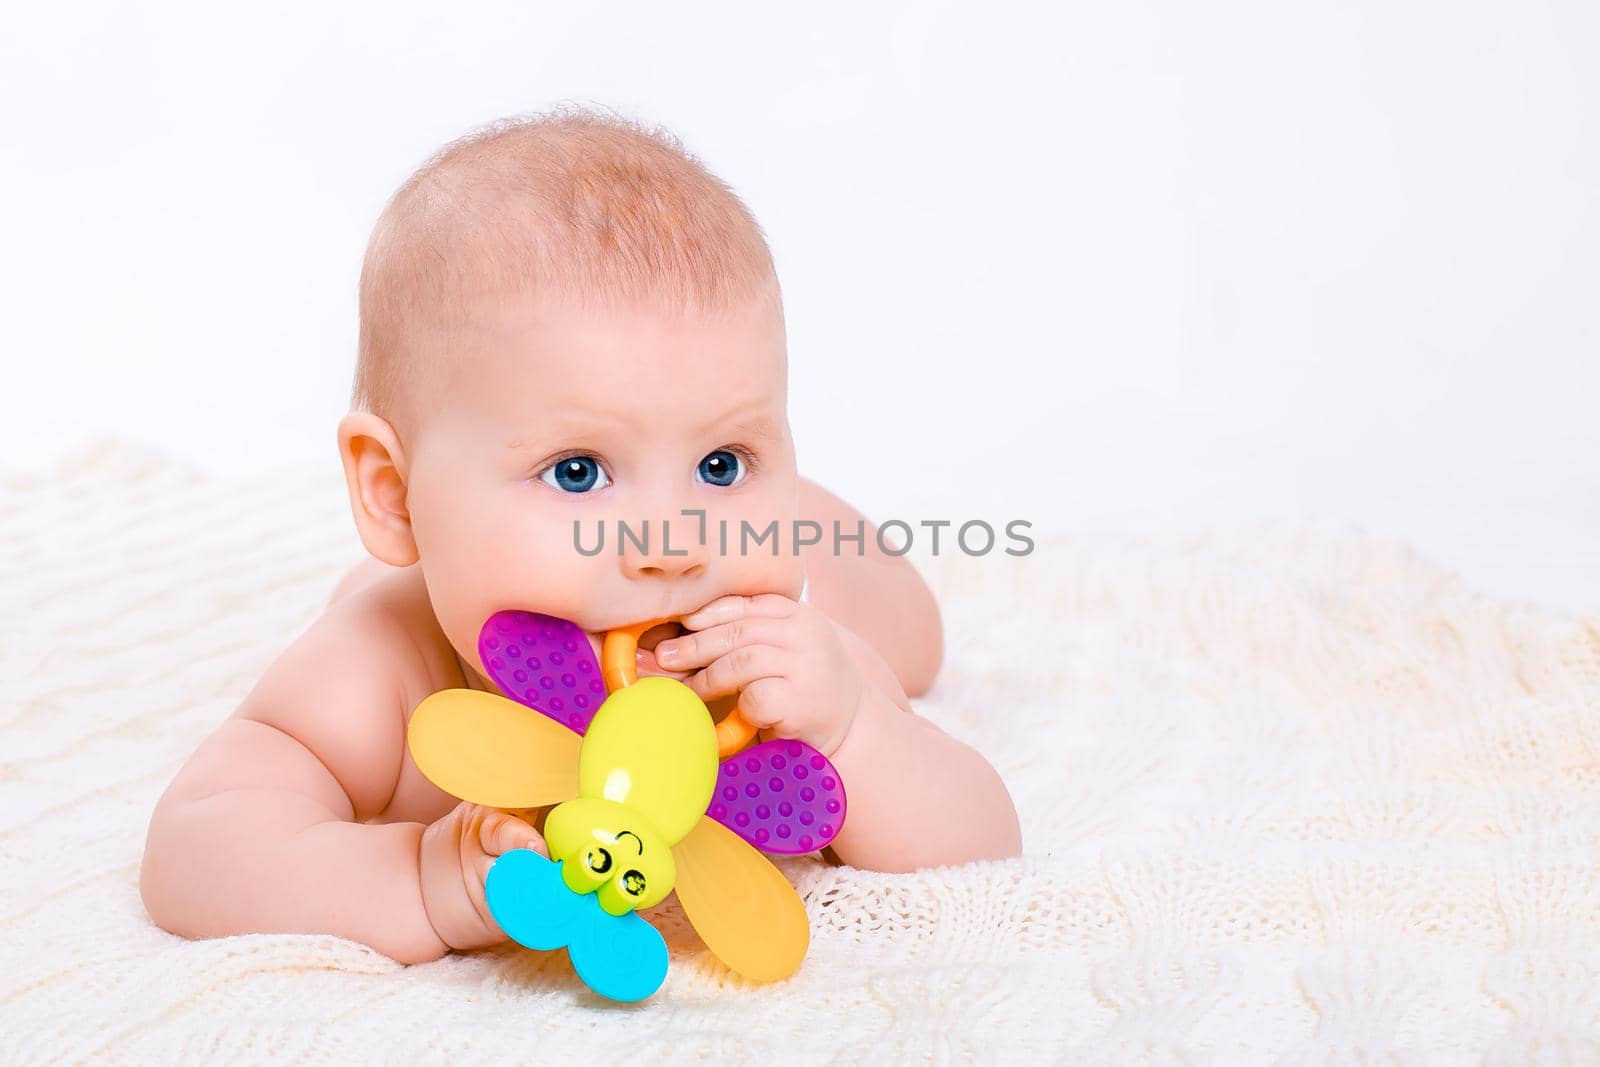 Cute baby girl on white background by nazarovsergey